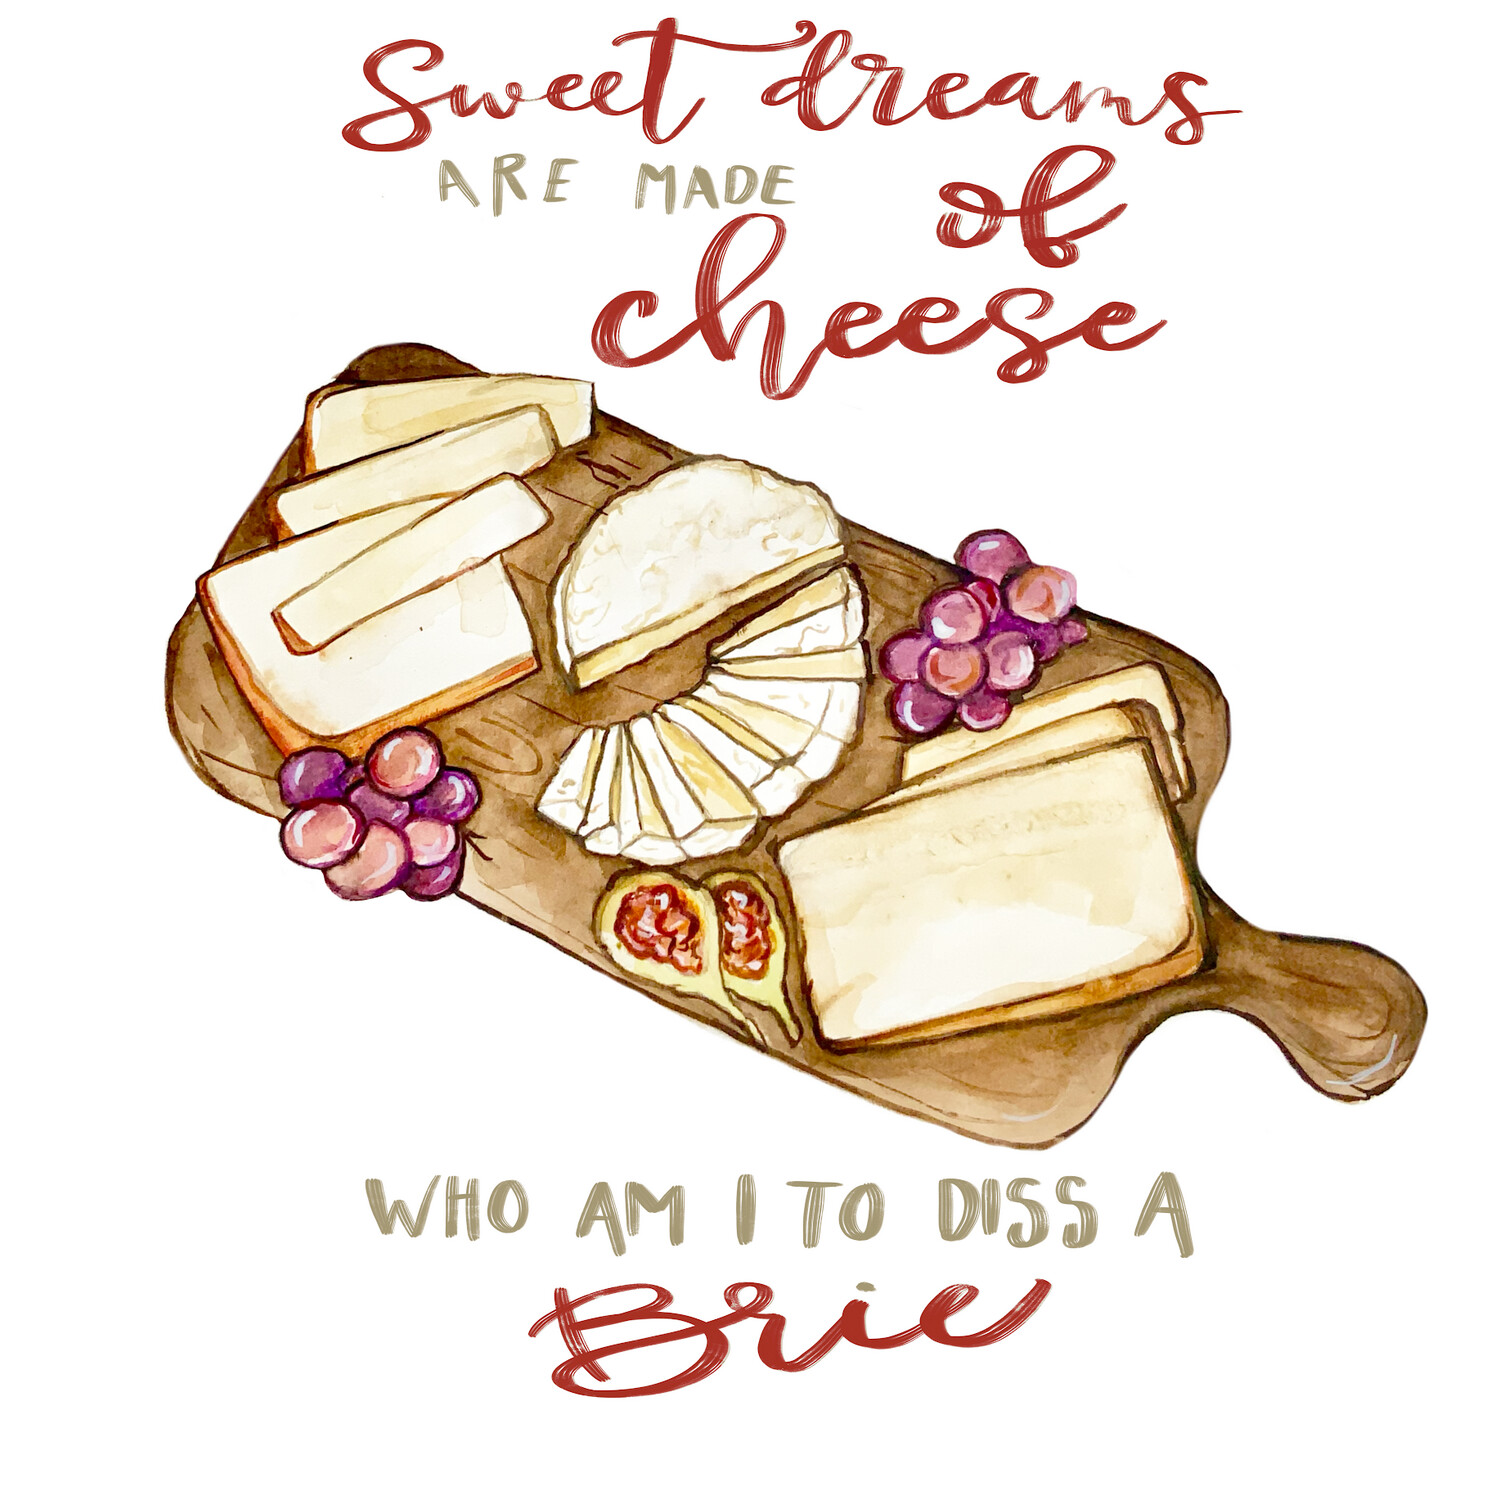 Sweet dreams cheese” Tea Towel